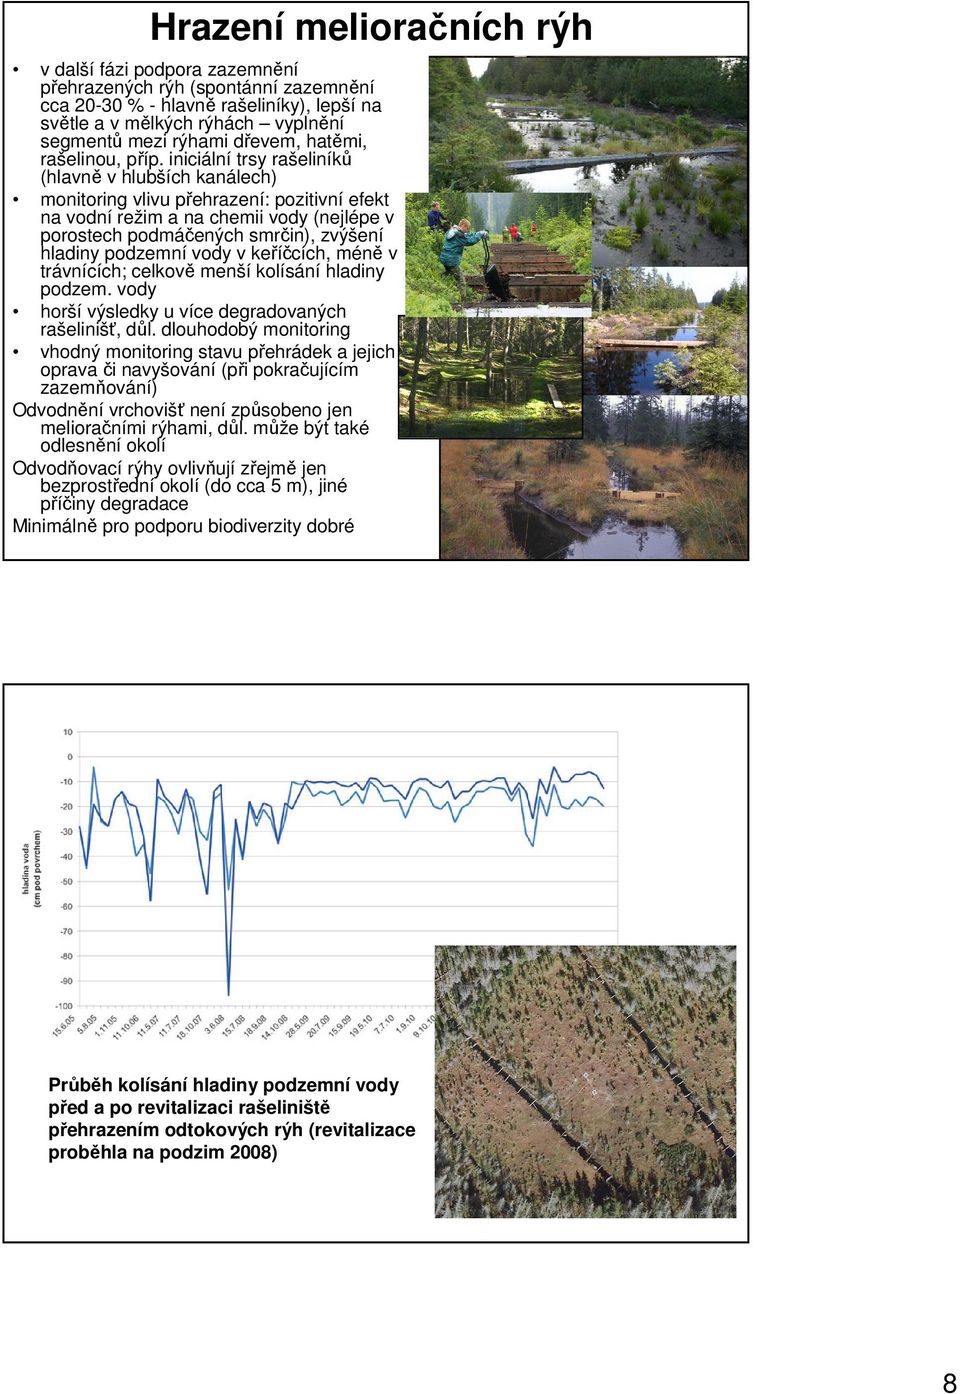 iniciální trsy rašeliníků (hlavně v hlubších kanálech) monitoring vlivu přehrazení: pozitivní efekt na vodní režim a na chemii vody (nejlépe v porostech podmáčených smrčin), zvýšení hladiny podzemní